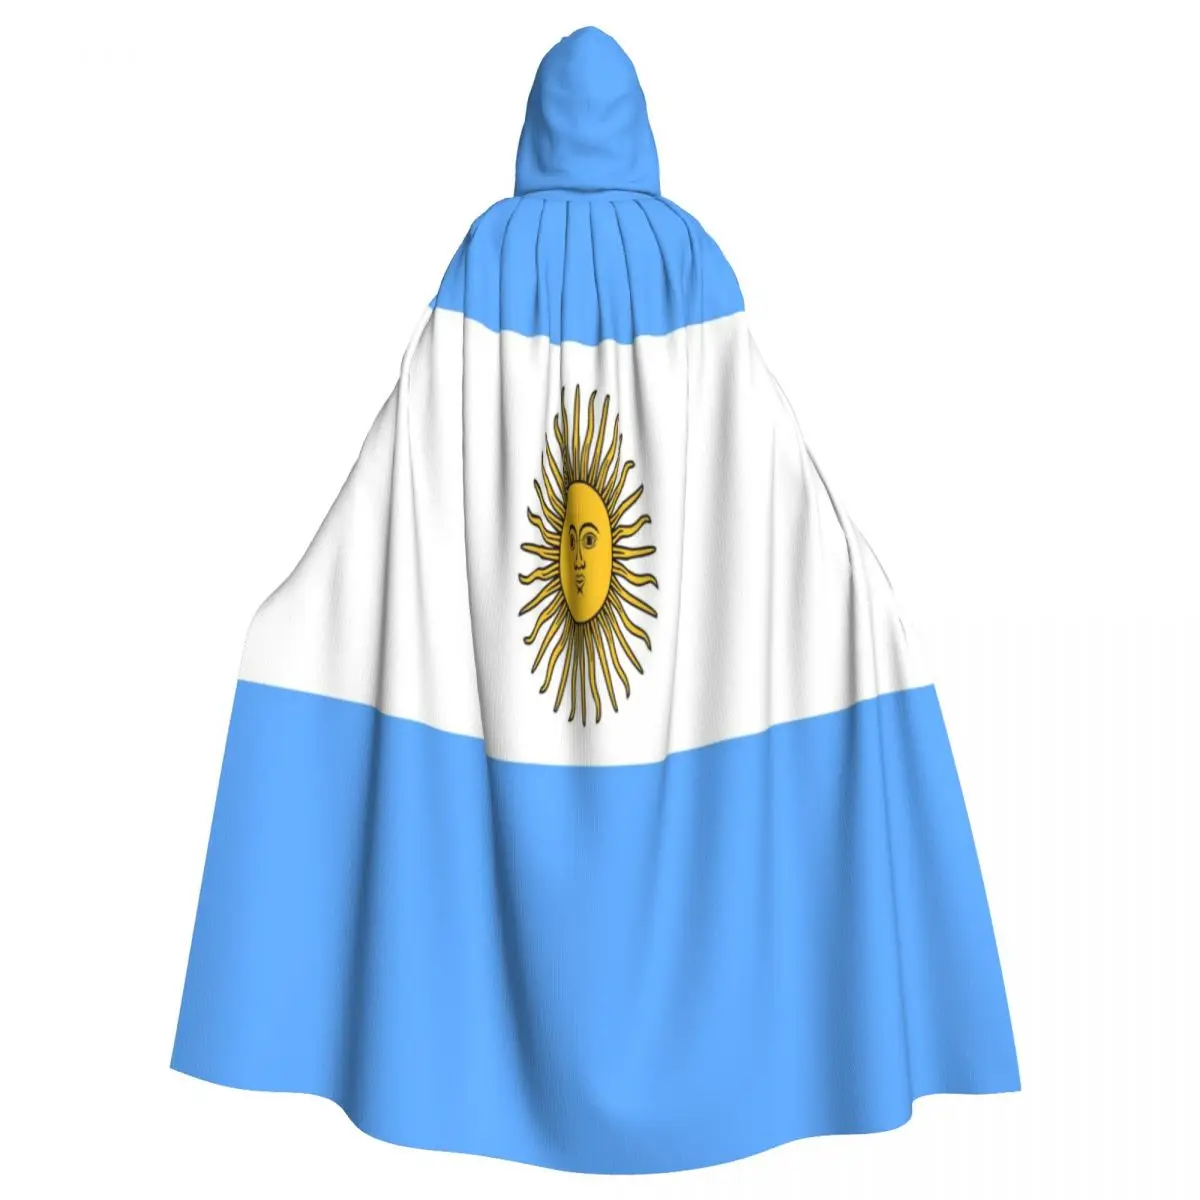 

Унисекс, стиль ведьмы, двусторонняя накидка с капюшоном для взрослых, вампиров, флаг Аргентины